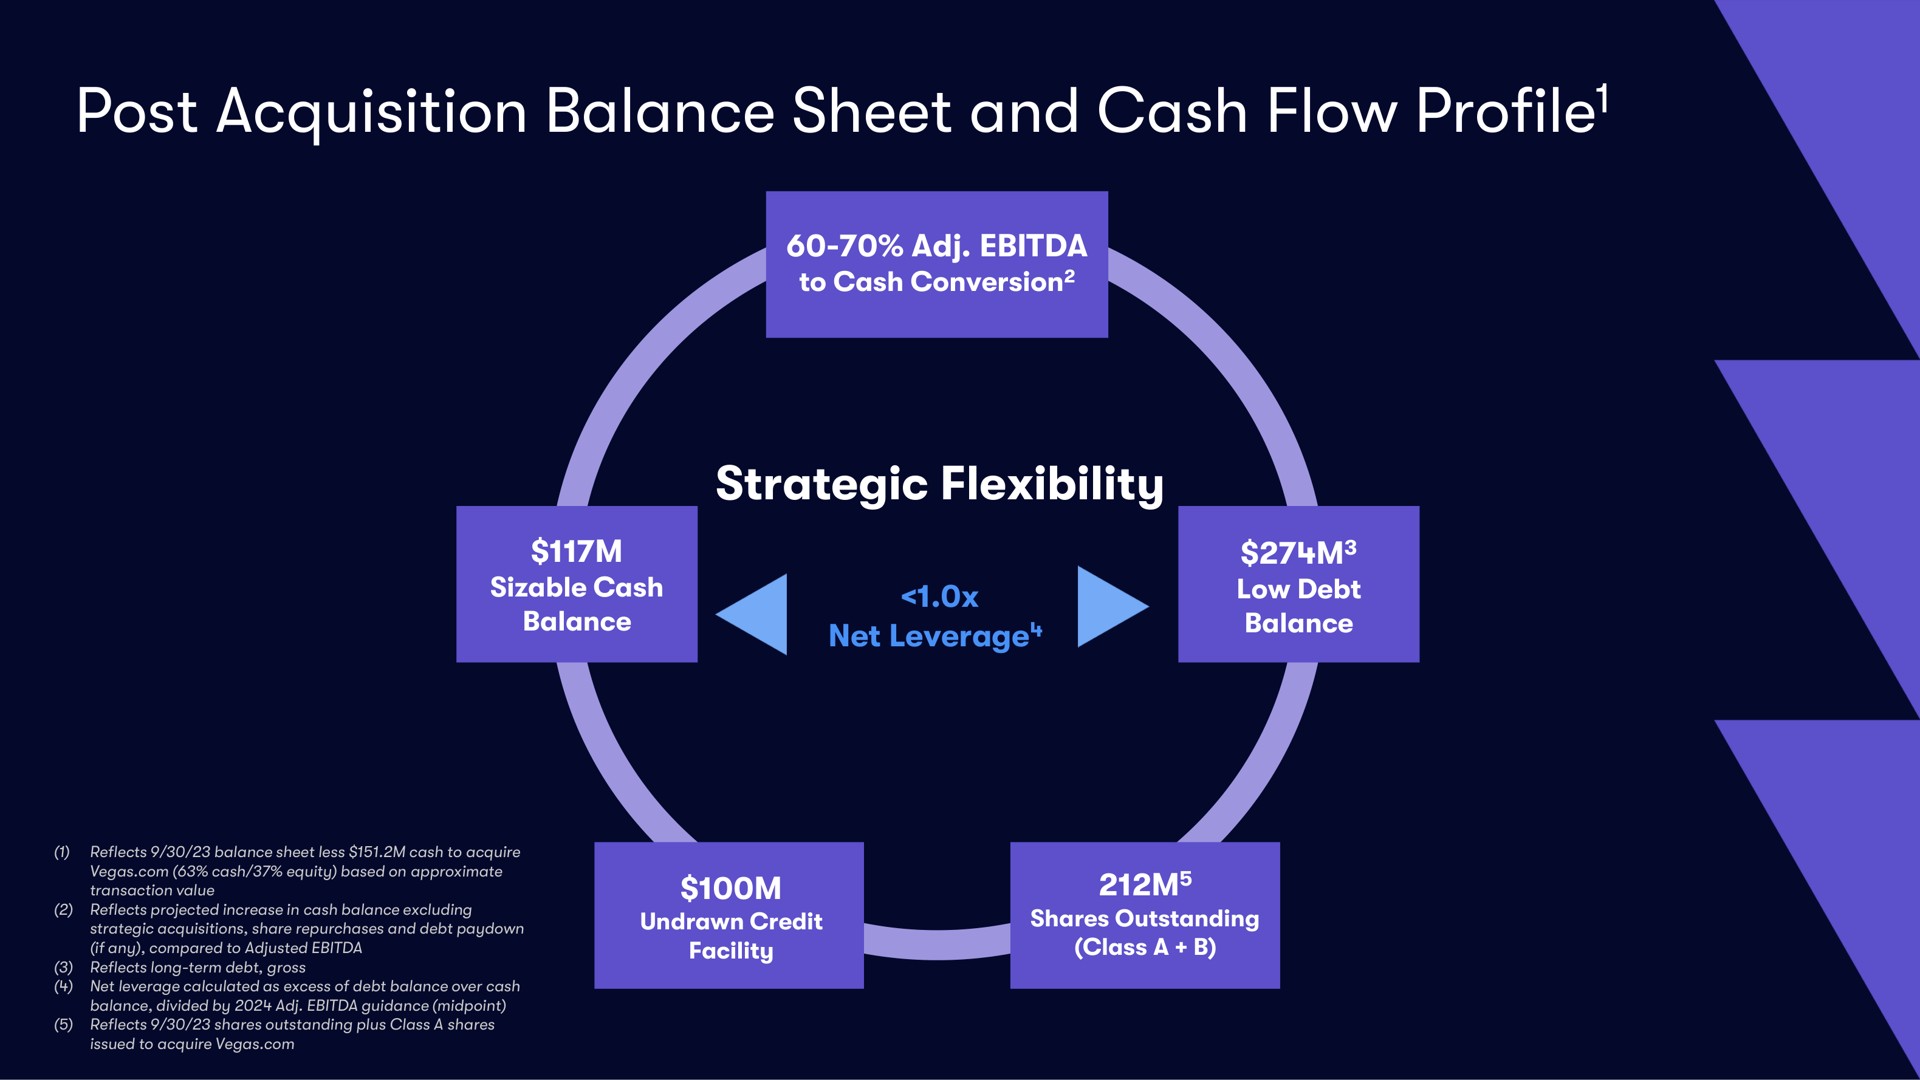 post acquisition balance sheet and cash flow profile strategic flexibility profile | Vivid Seats